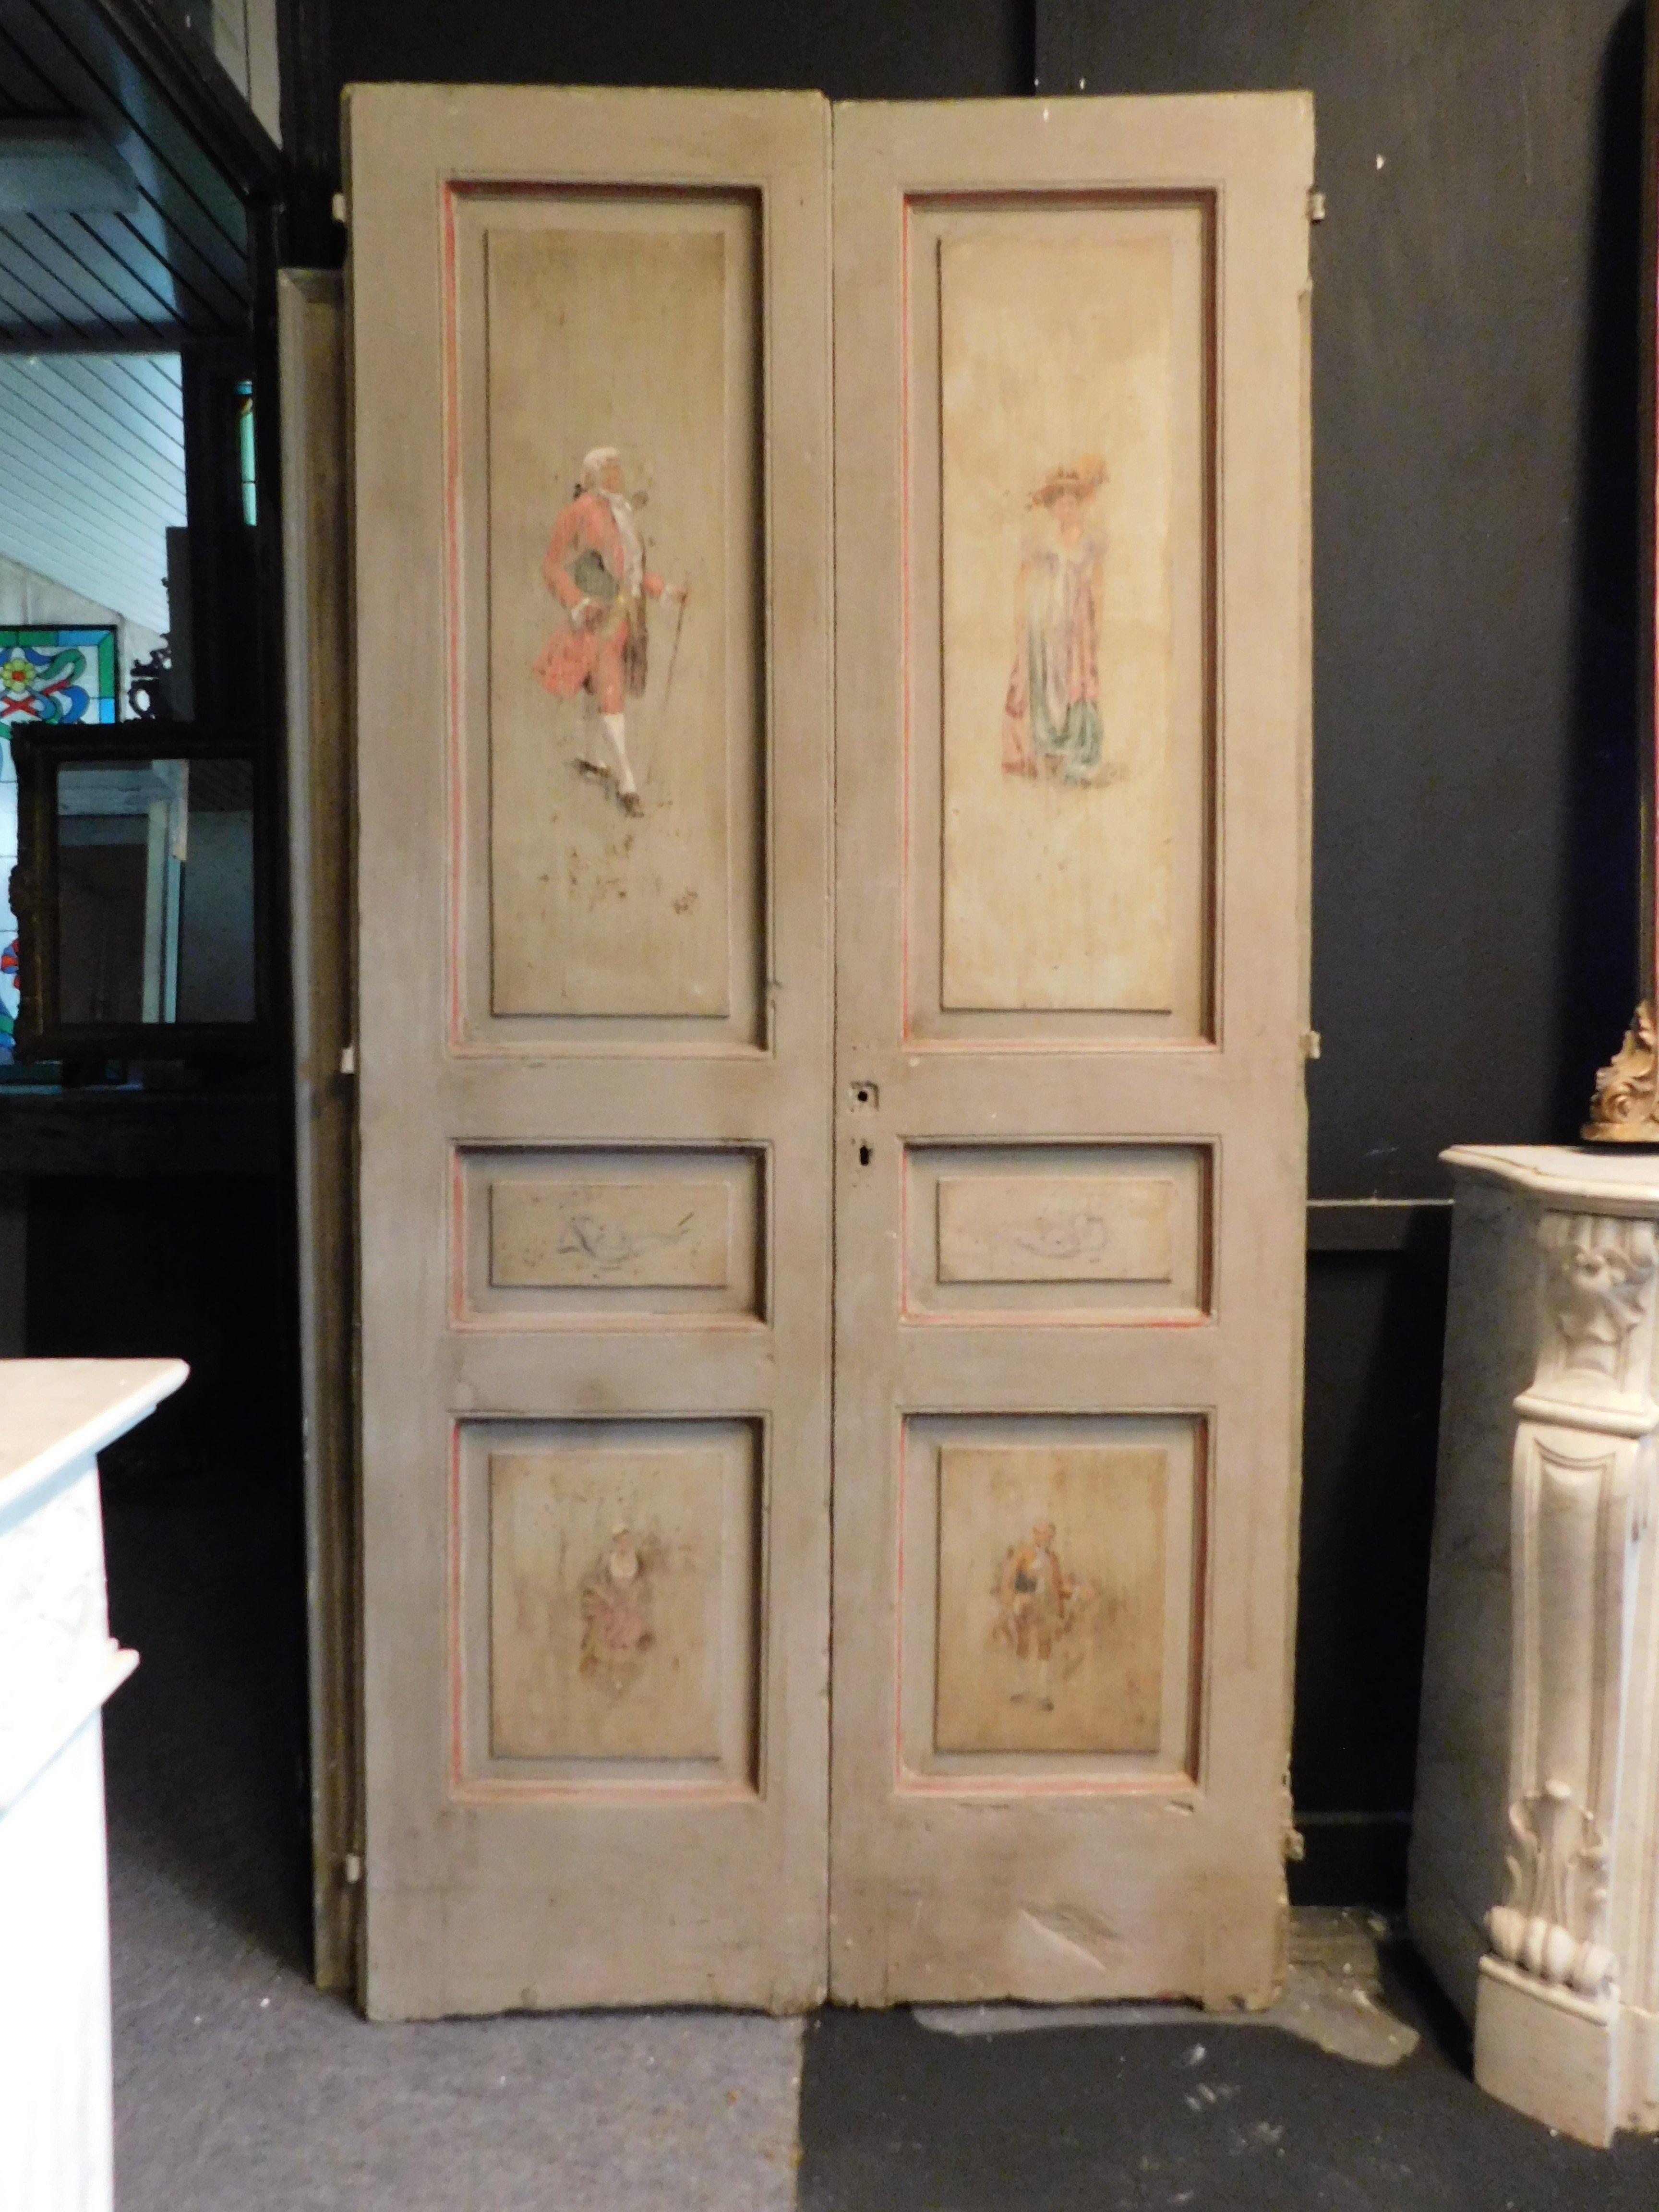 2 portes doubles laquées et peintes, à deux vantaux. Personnages peints en vêtements d'époque masculins et féminins. laqués et peints à la main au 18ème siècle par des artisans du centre de l'Italie. belle solution pour meubler l'entrée des chambres